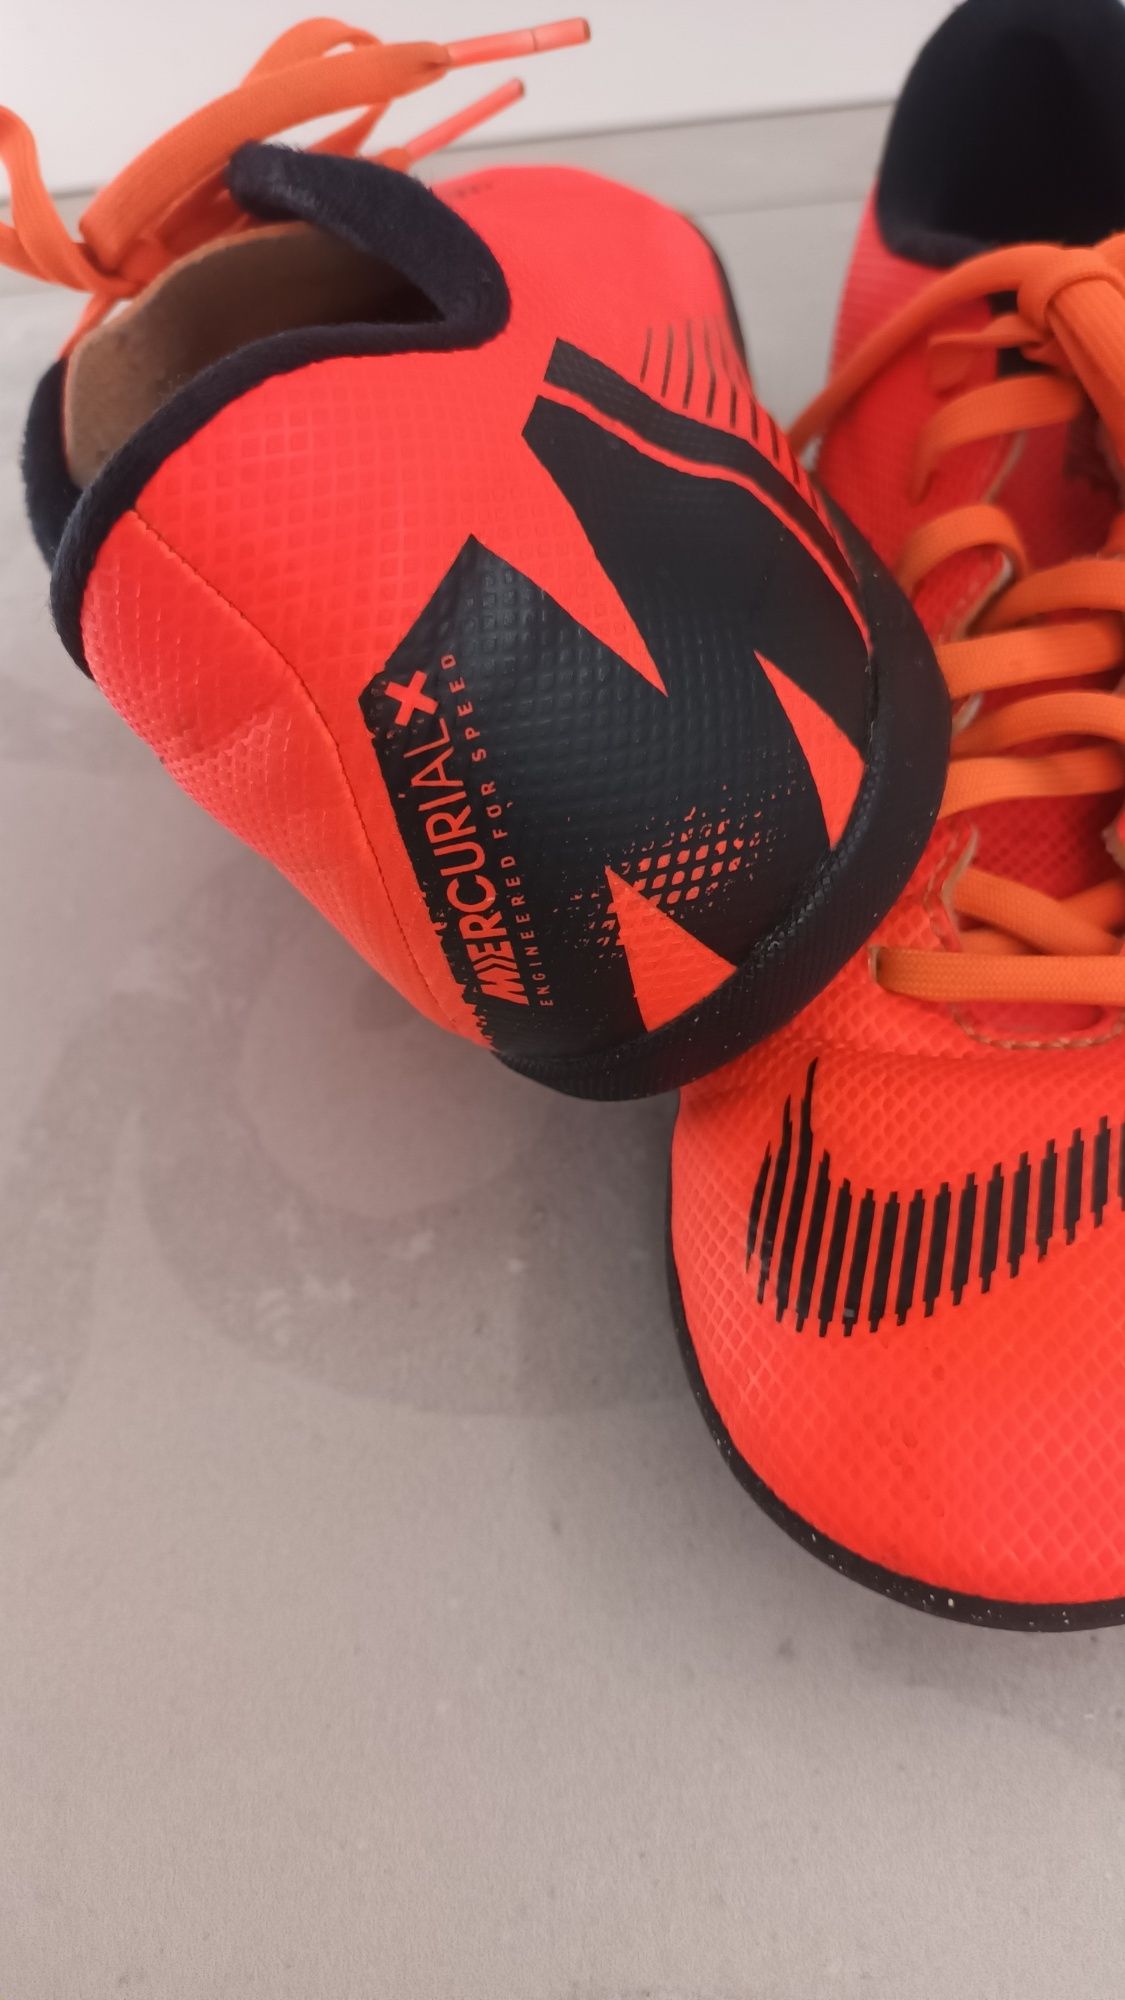 Buty piłkarskie Nike Mercurial X rozm. 40 (25cm)